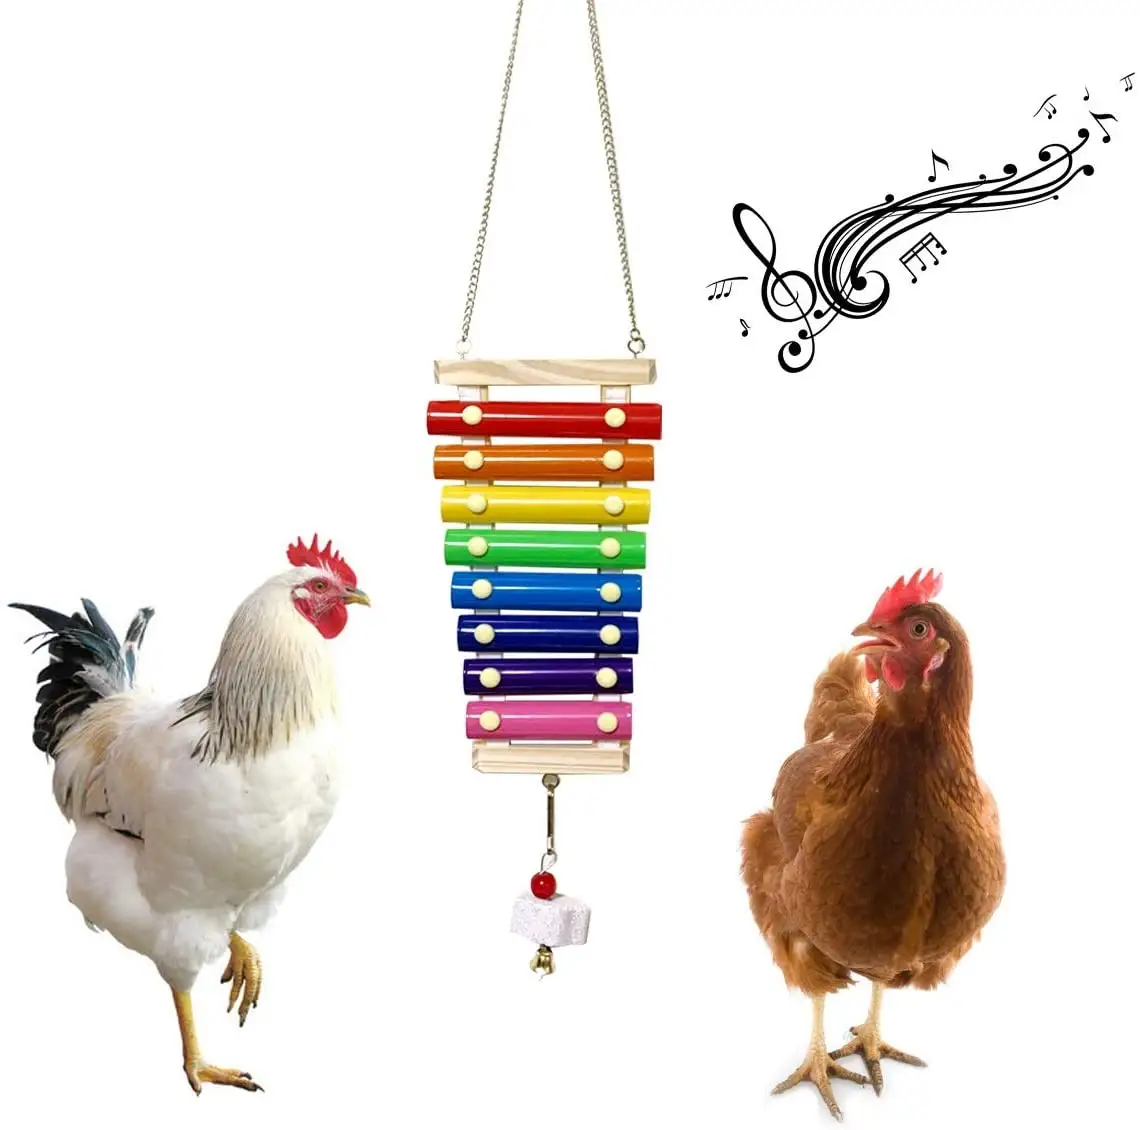 Tavuk ksilofon oyuncak tavuk gagalama oyuncak için uygun tavuk tavuk kümesi